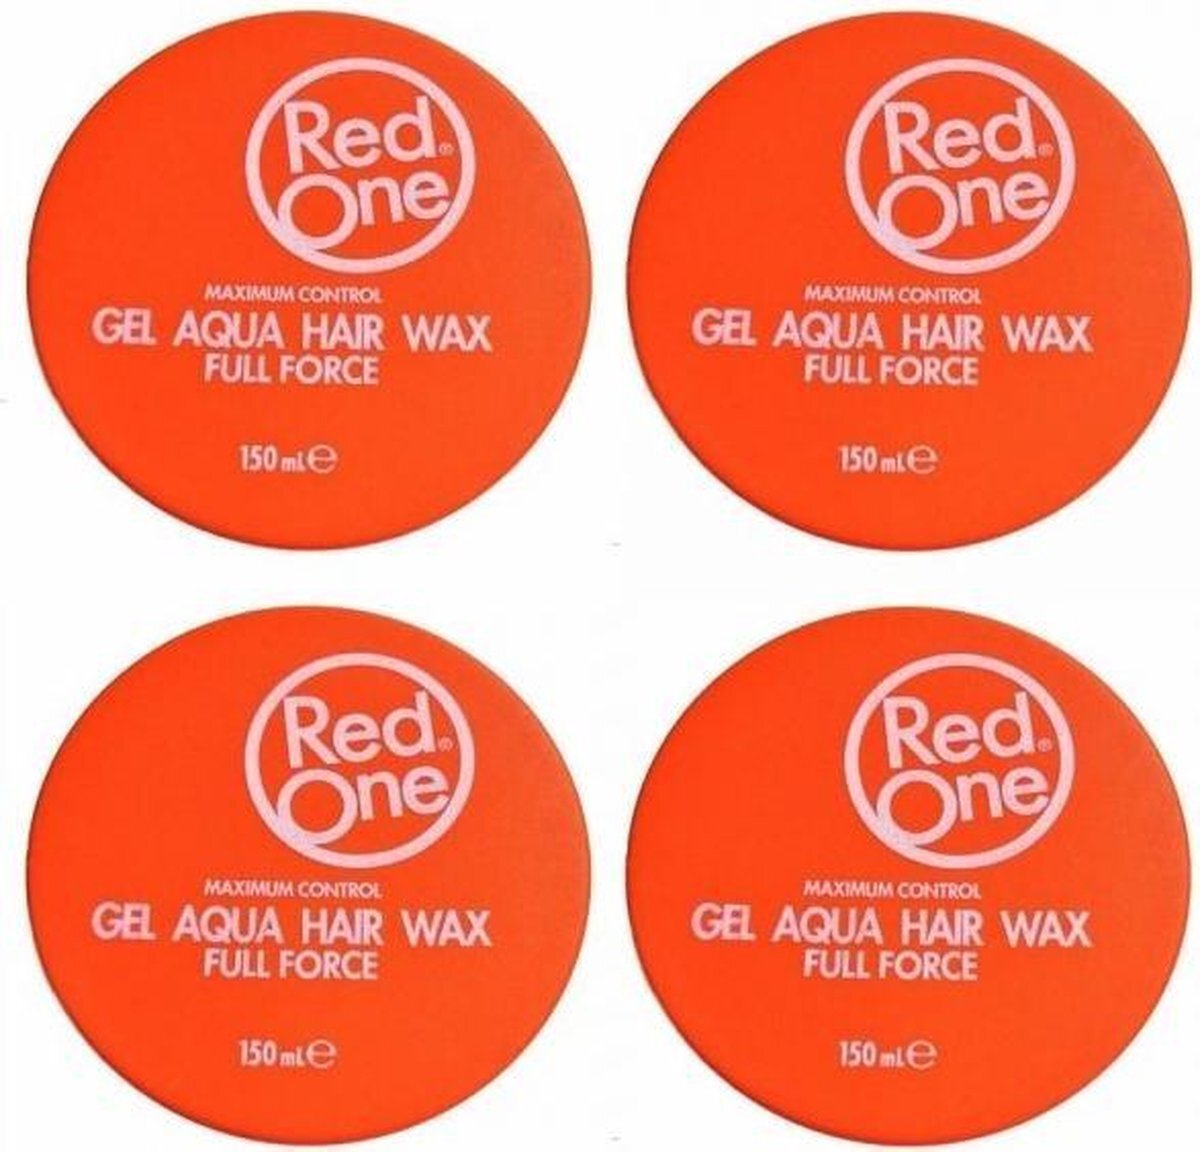 RedOne Orange Hair Wax| Haarwax| Haargel| Gel| Aqua wax| Oranje Aqua haarwax| 4 stuks| 4 pieces